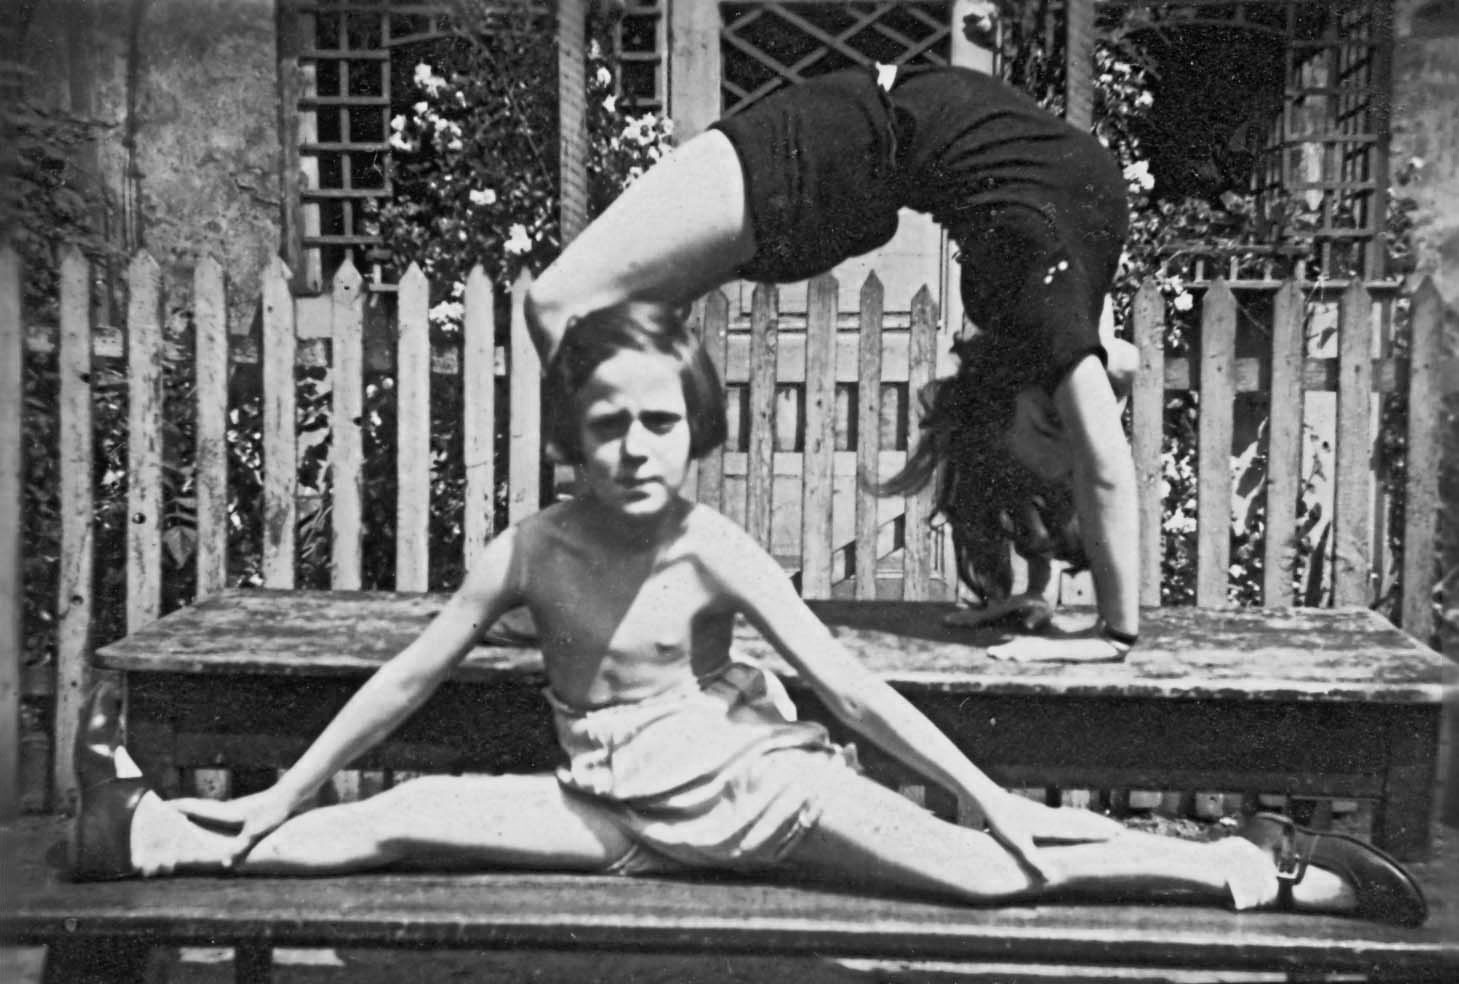  Анита Кемпнер  занимается гимнастикой во дворе своего дома в Бреслау, Германия (сегодня – Вроцлав,  Польша), конец 1930-х годов. На заднем плане - предположительно её старшая сестра  Рената